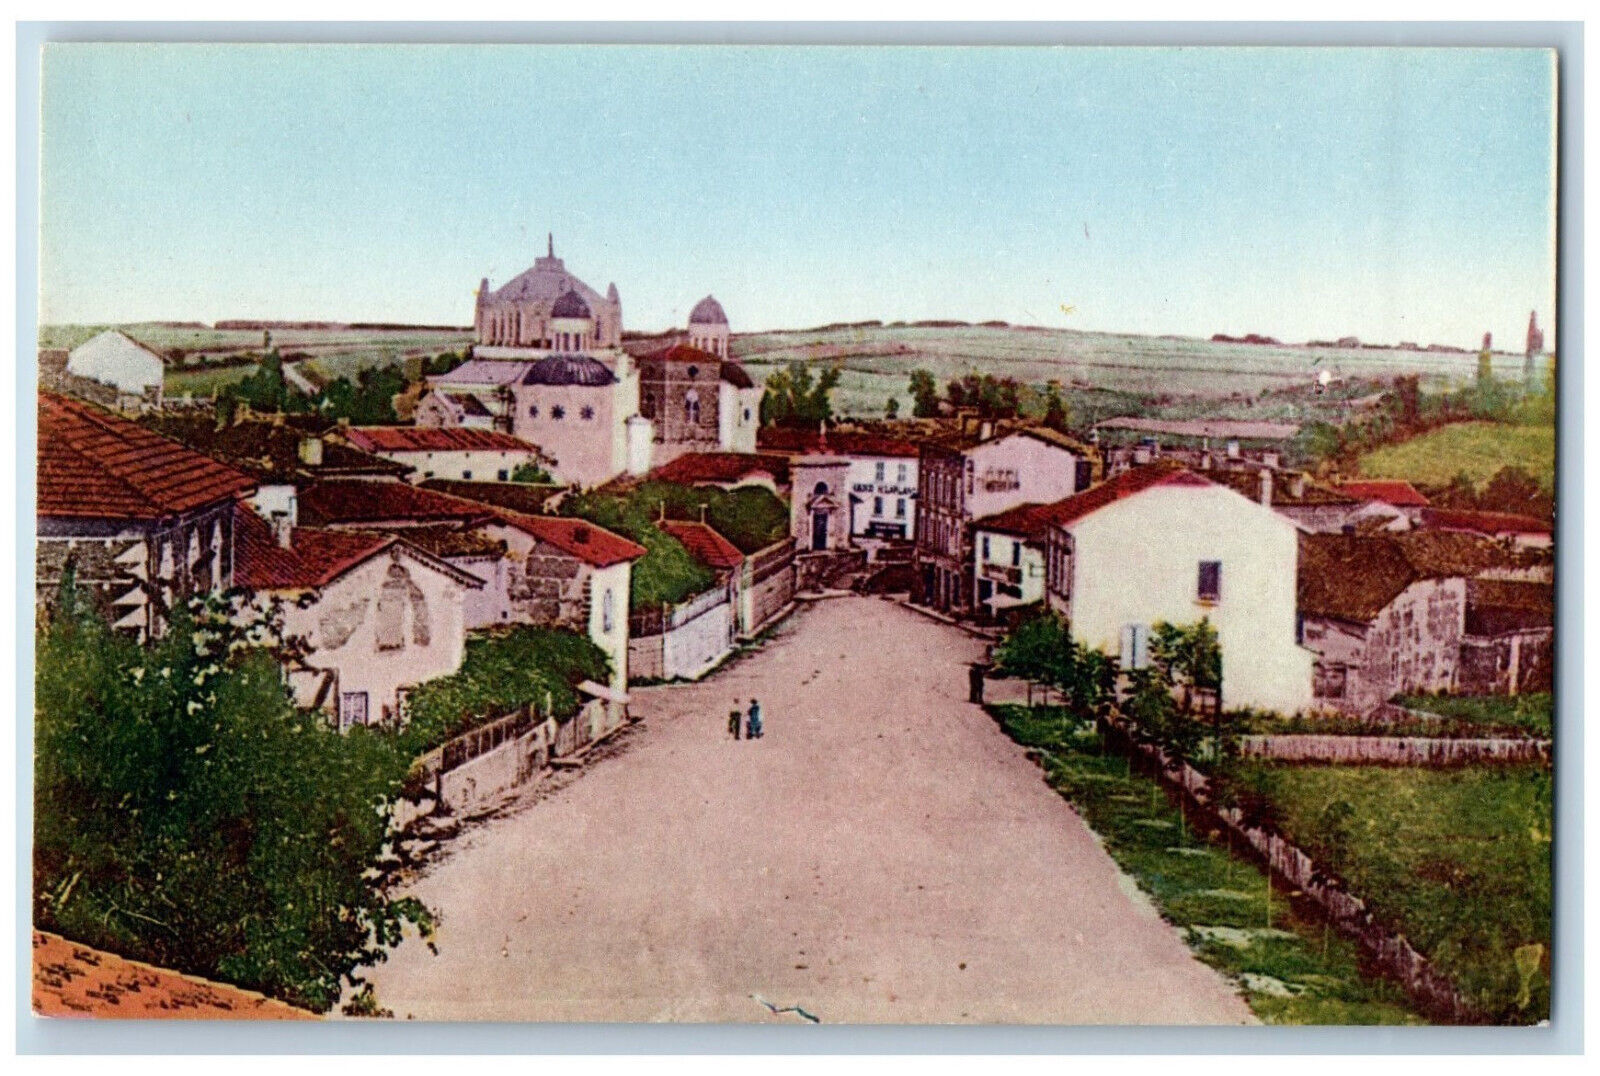 Ars-sur-Formans (Ain) France Postcard General View c1910 Unposted Antique